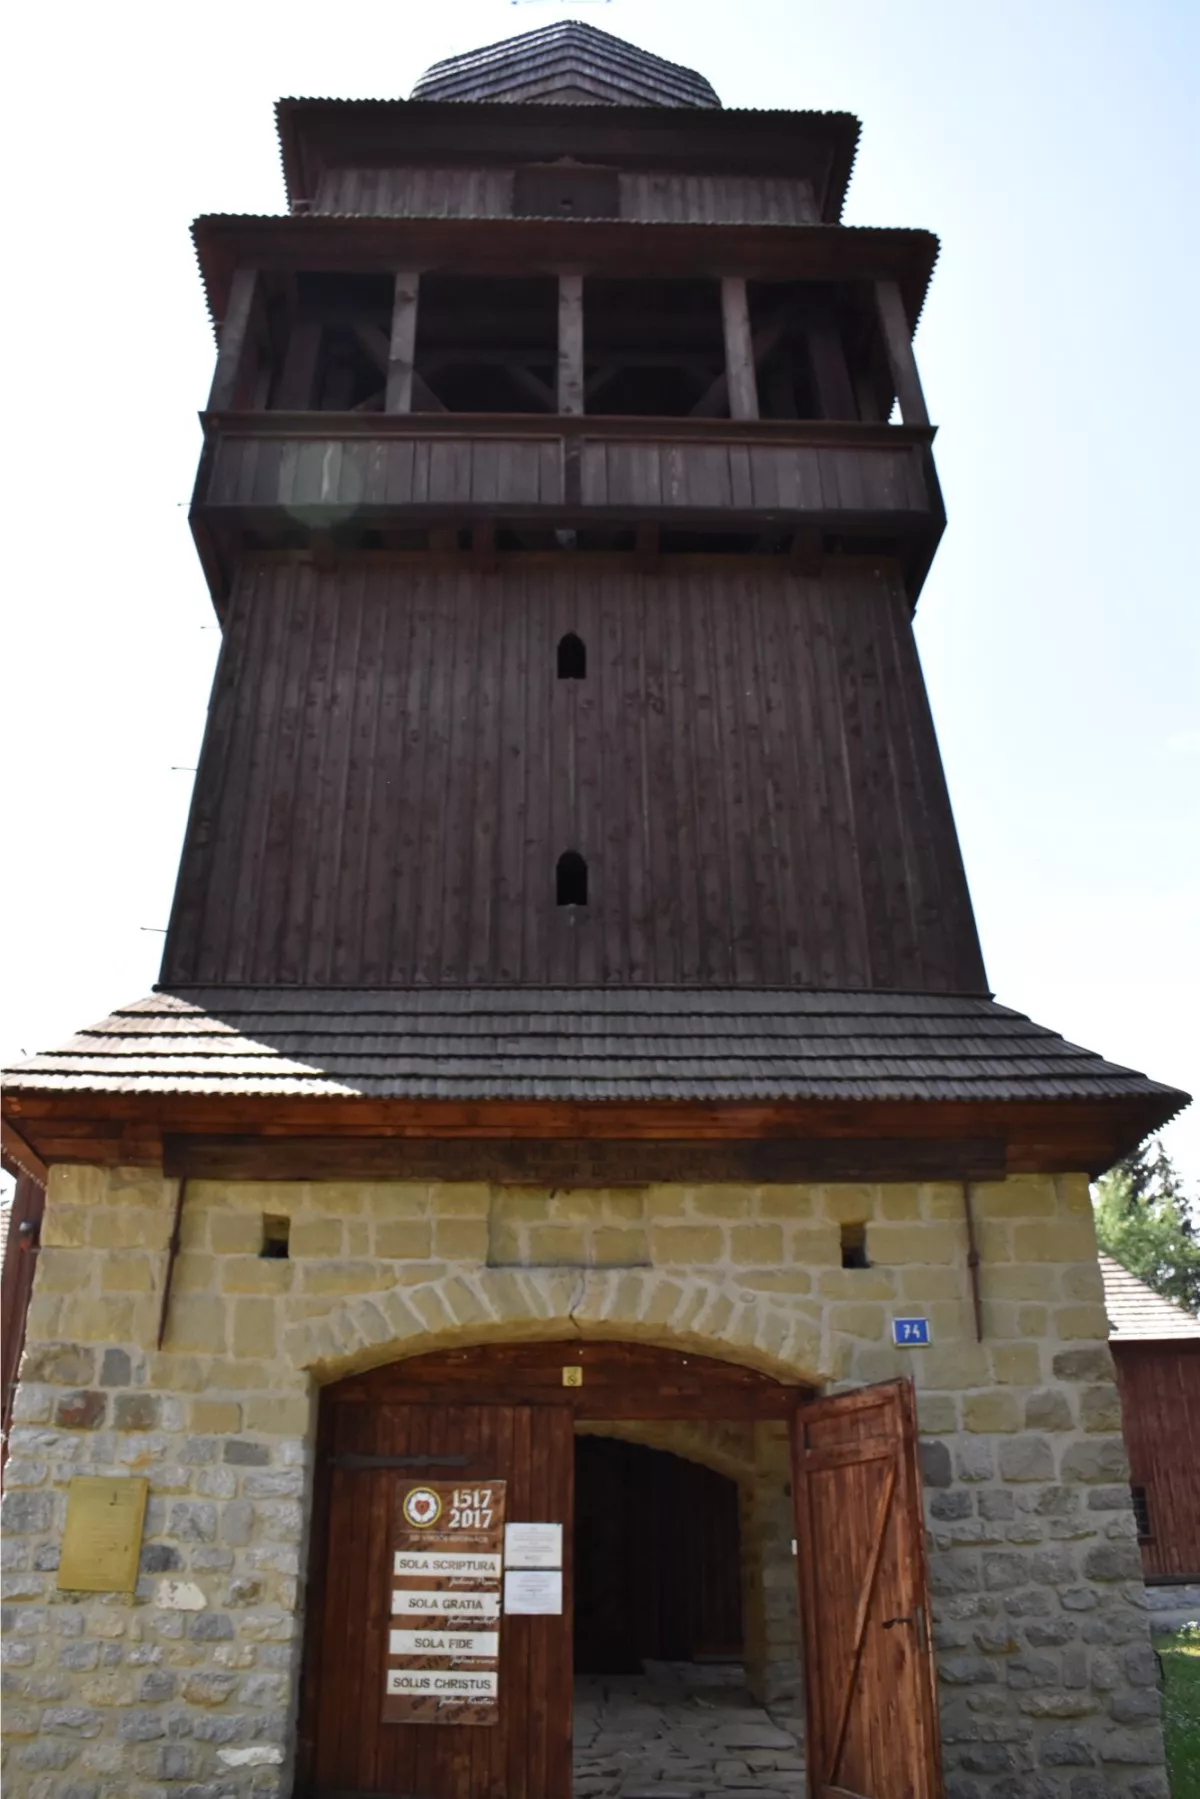 Artikularny dreveny kostol Svaty Kriz